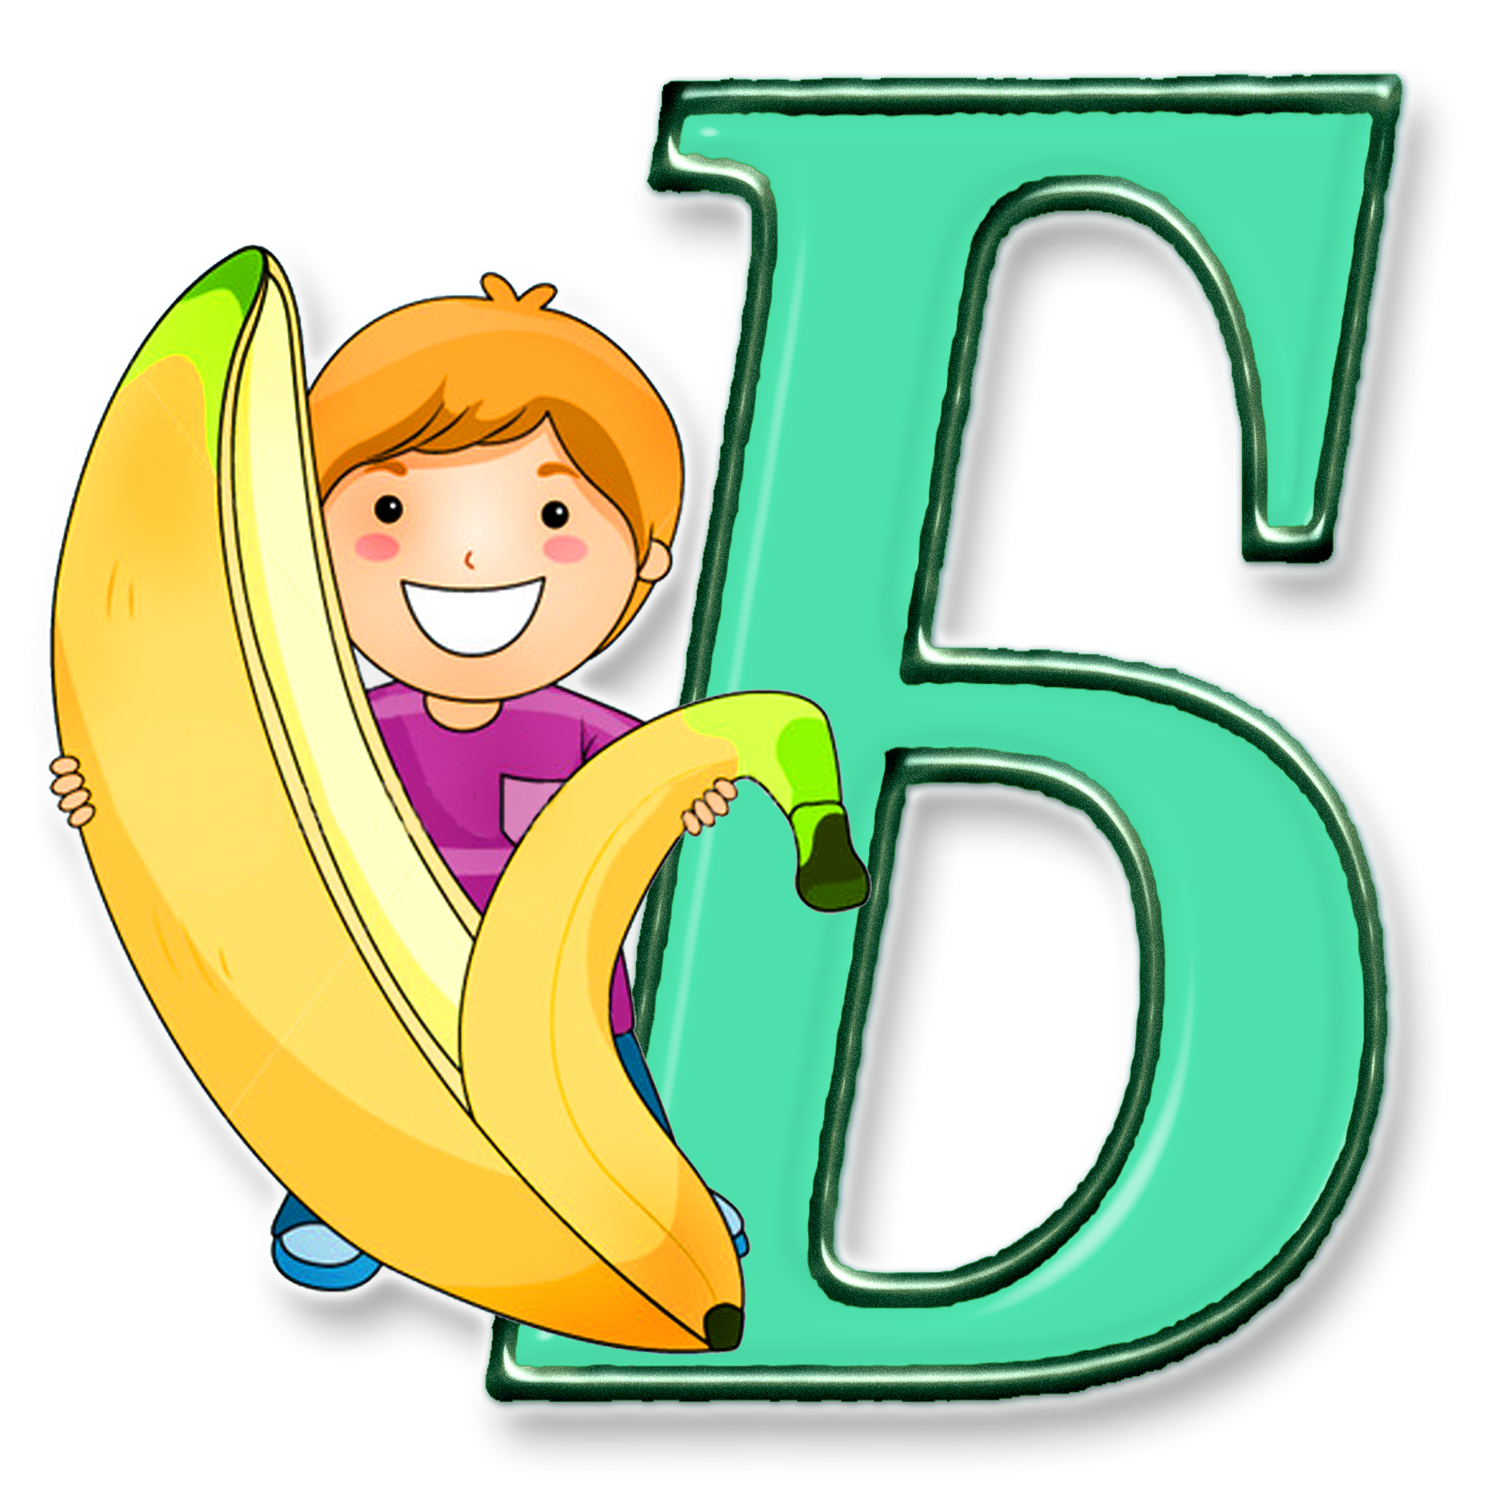 B alphabet. Алфавит и буквы. Буквы для детей. Красивые детские буквы. Буква а картинка.